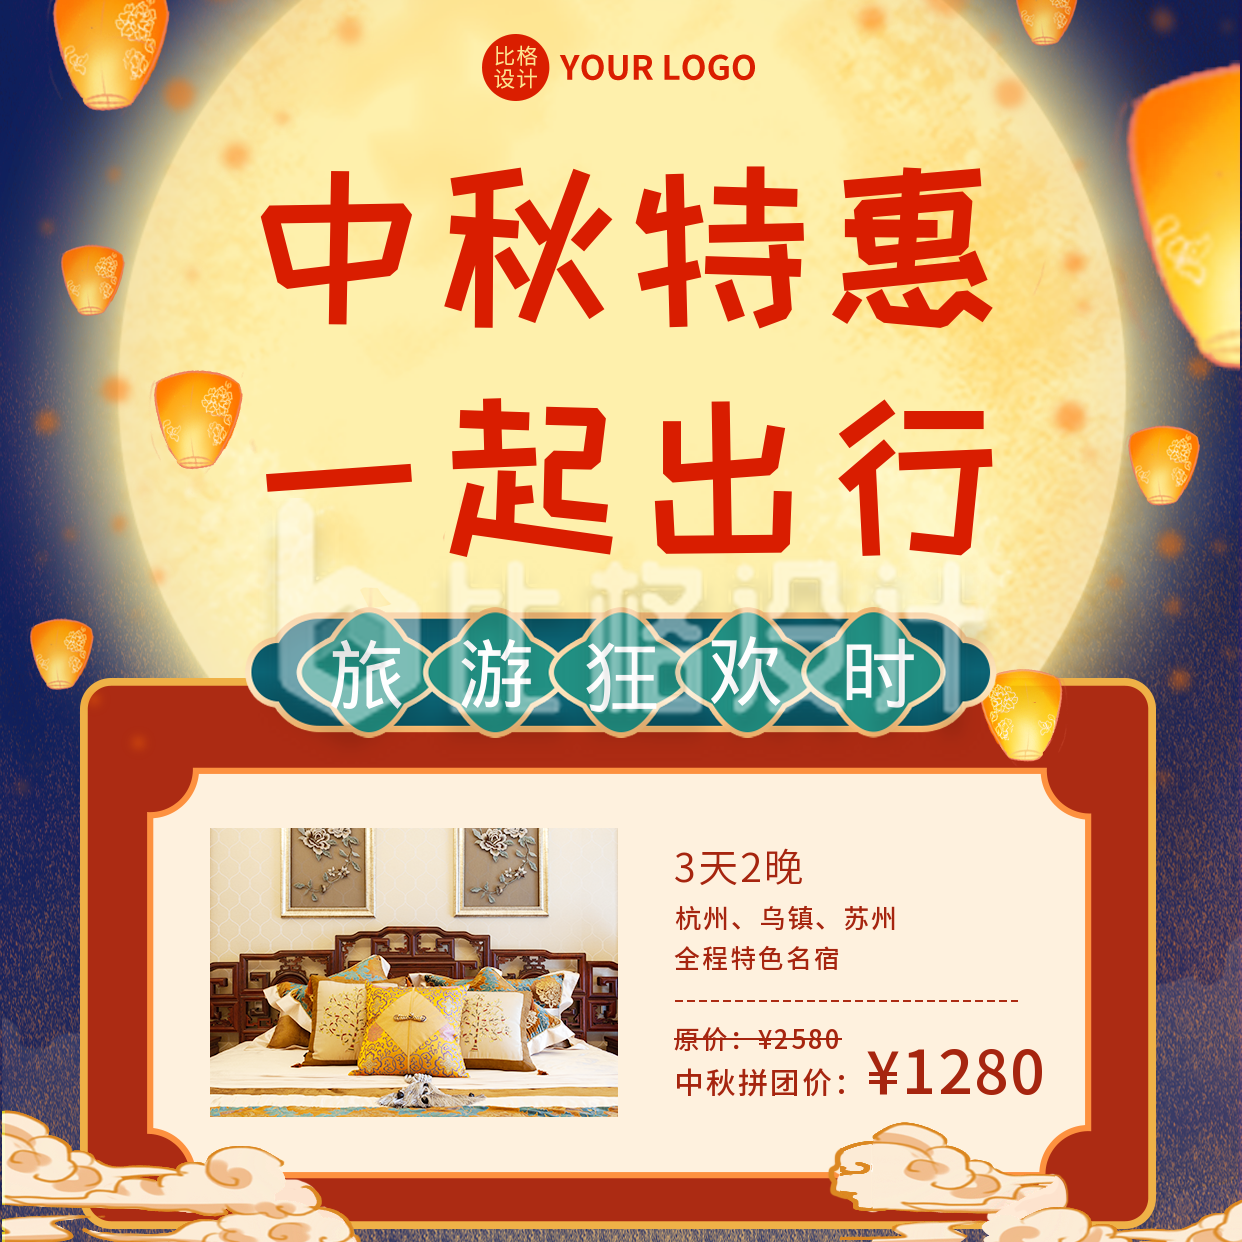 中秋节旅游活动营销方形海报